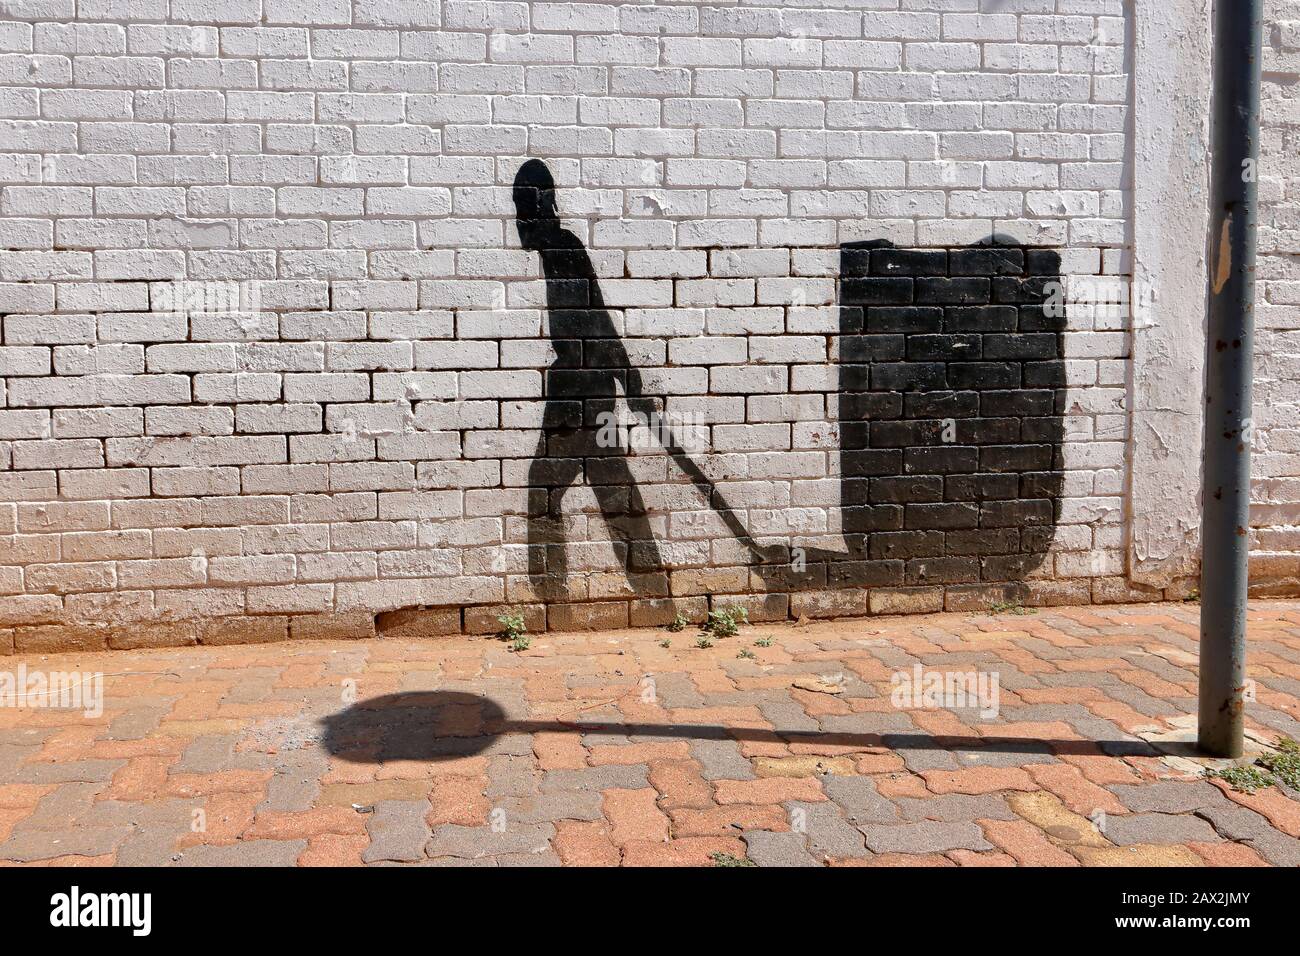 Street Art im Silhouette- oder Schattenformat, das die Entschlossenheit zeigt, hart für ein Einkommen aus dem Lebensunterhalt zu arbeiten und trotz der Chancen weiter zu gehen Stockfoto